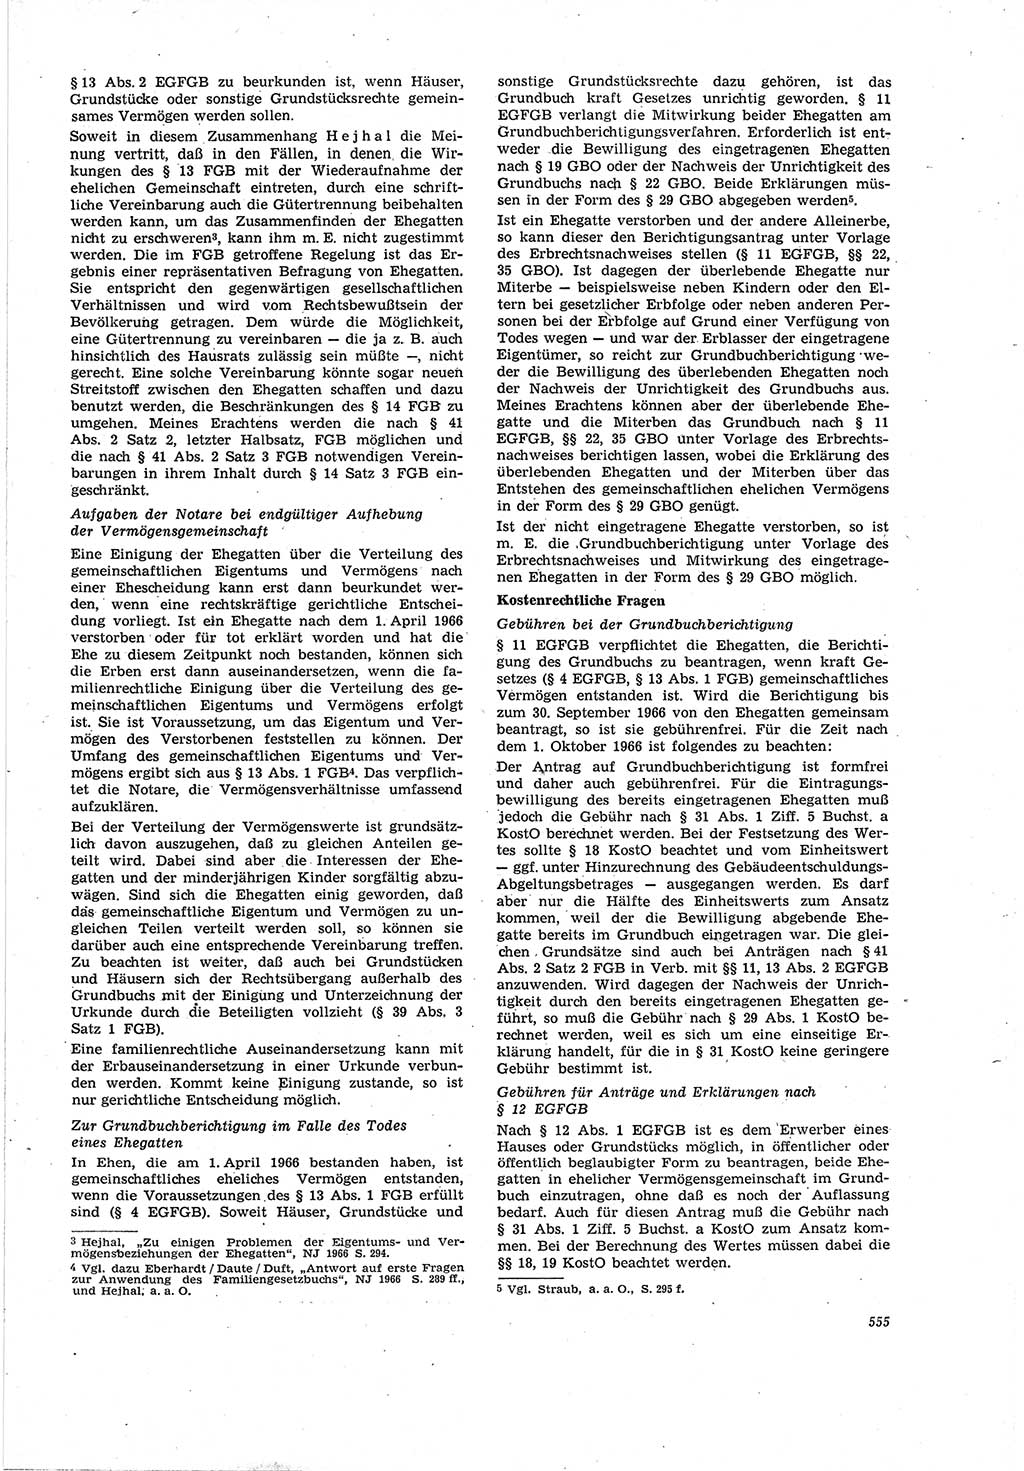 Neue Justiz (NJ), Zeitschrift für Recht und Rechtswissenschaft [Deutsche Demokratische Republik (DDR)], 20. Jahrgang 1966, Seite 555 (NJ DDR 1966, S. 555)